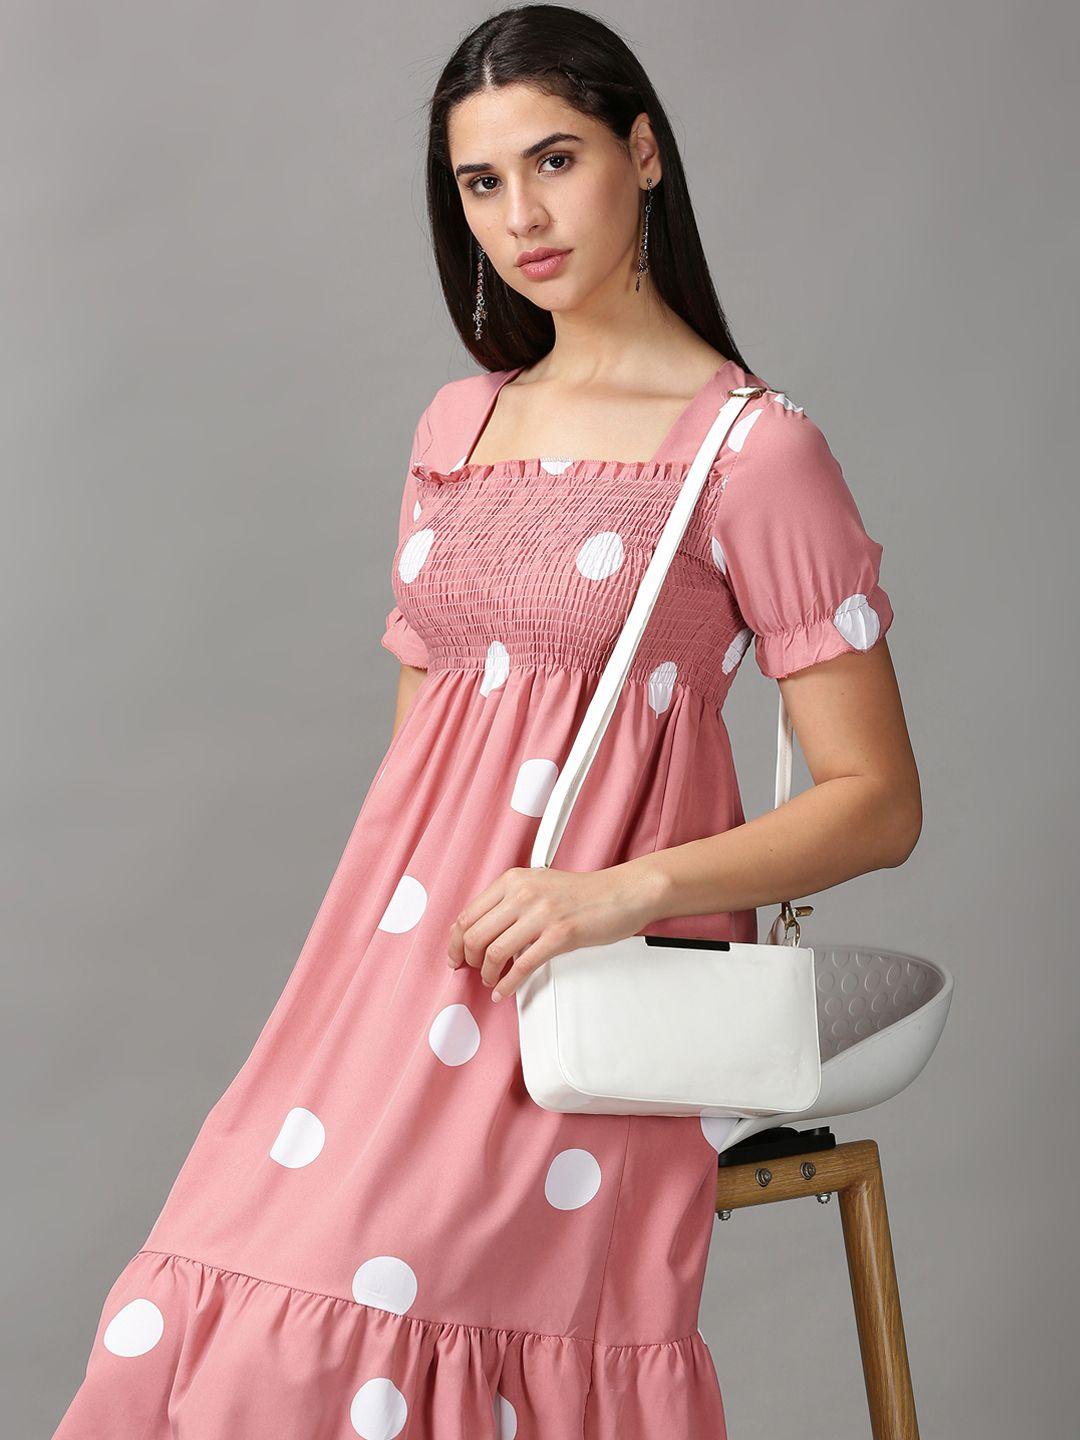 showoff-mauve-&-white-polka-dot-printed-empire-dress